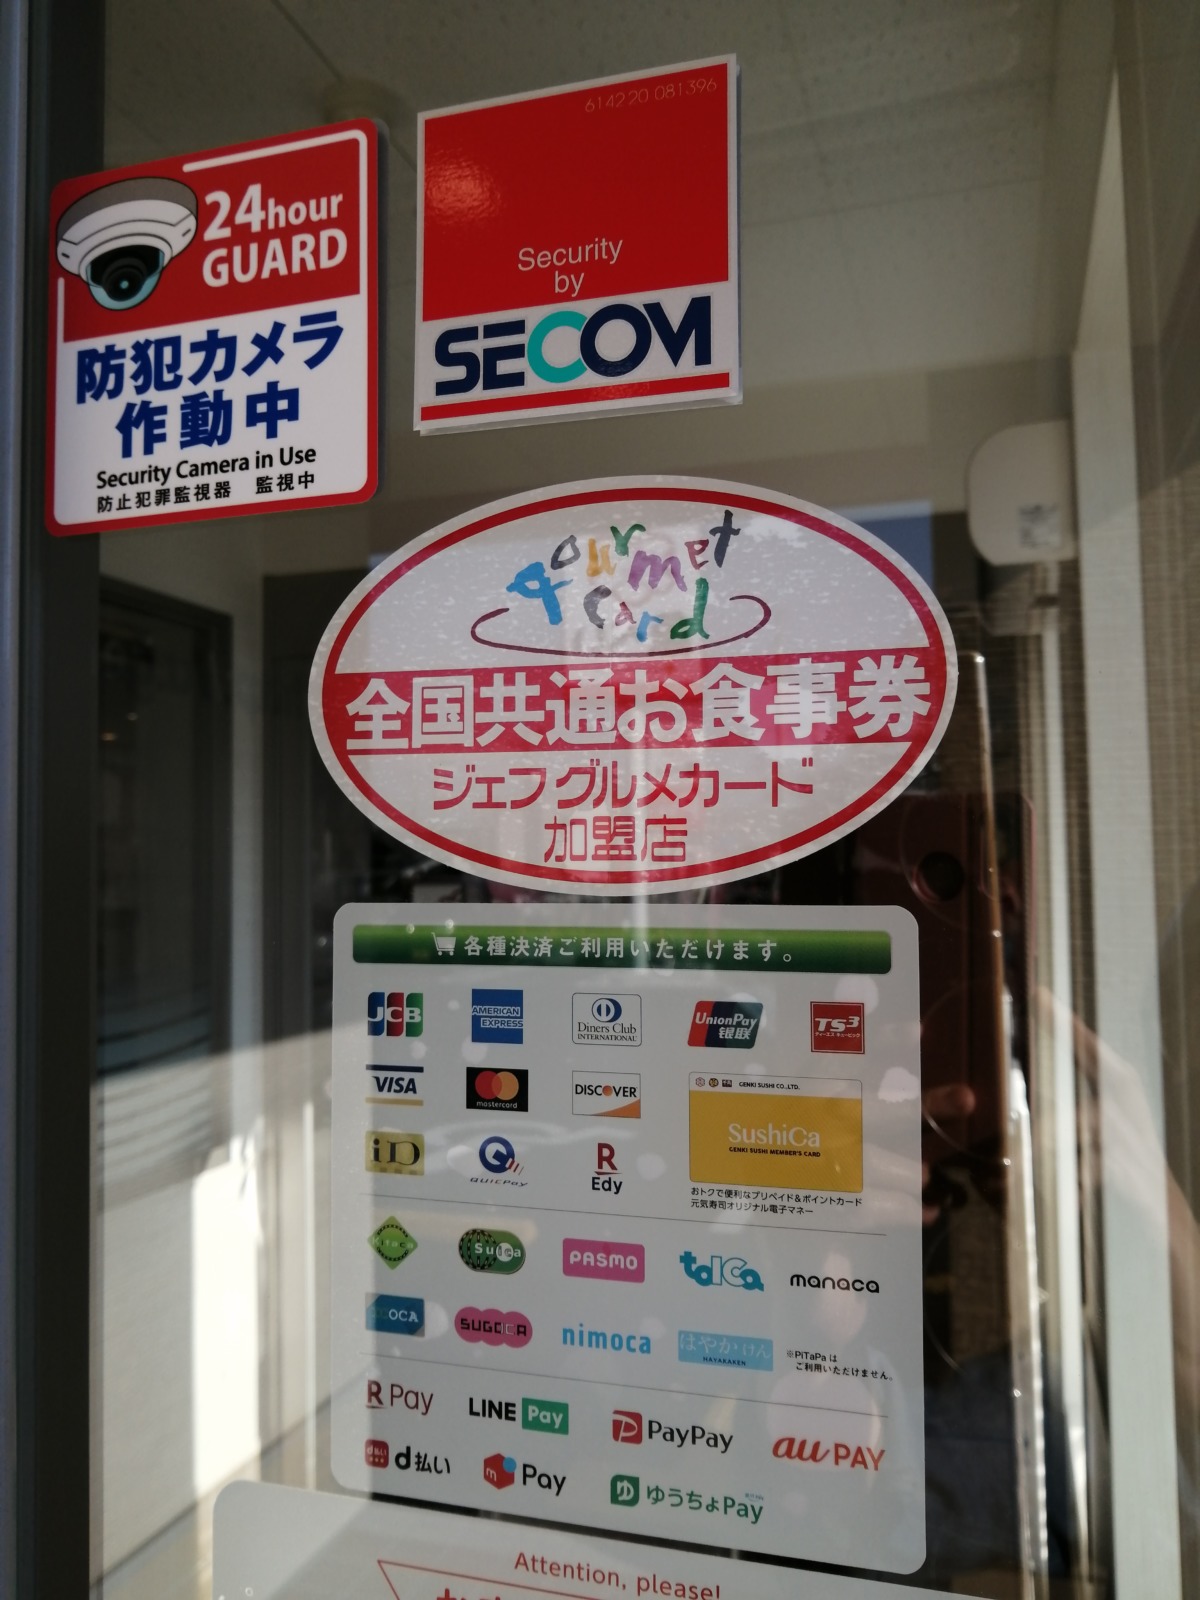 10 23オープン 堺市西区鳳 高速レーンでへいお待ち 回転 しない 寿司 魚べい堺鳳店 がオープンしたよ さかにゅー